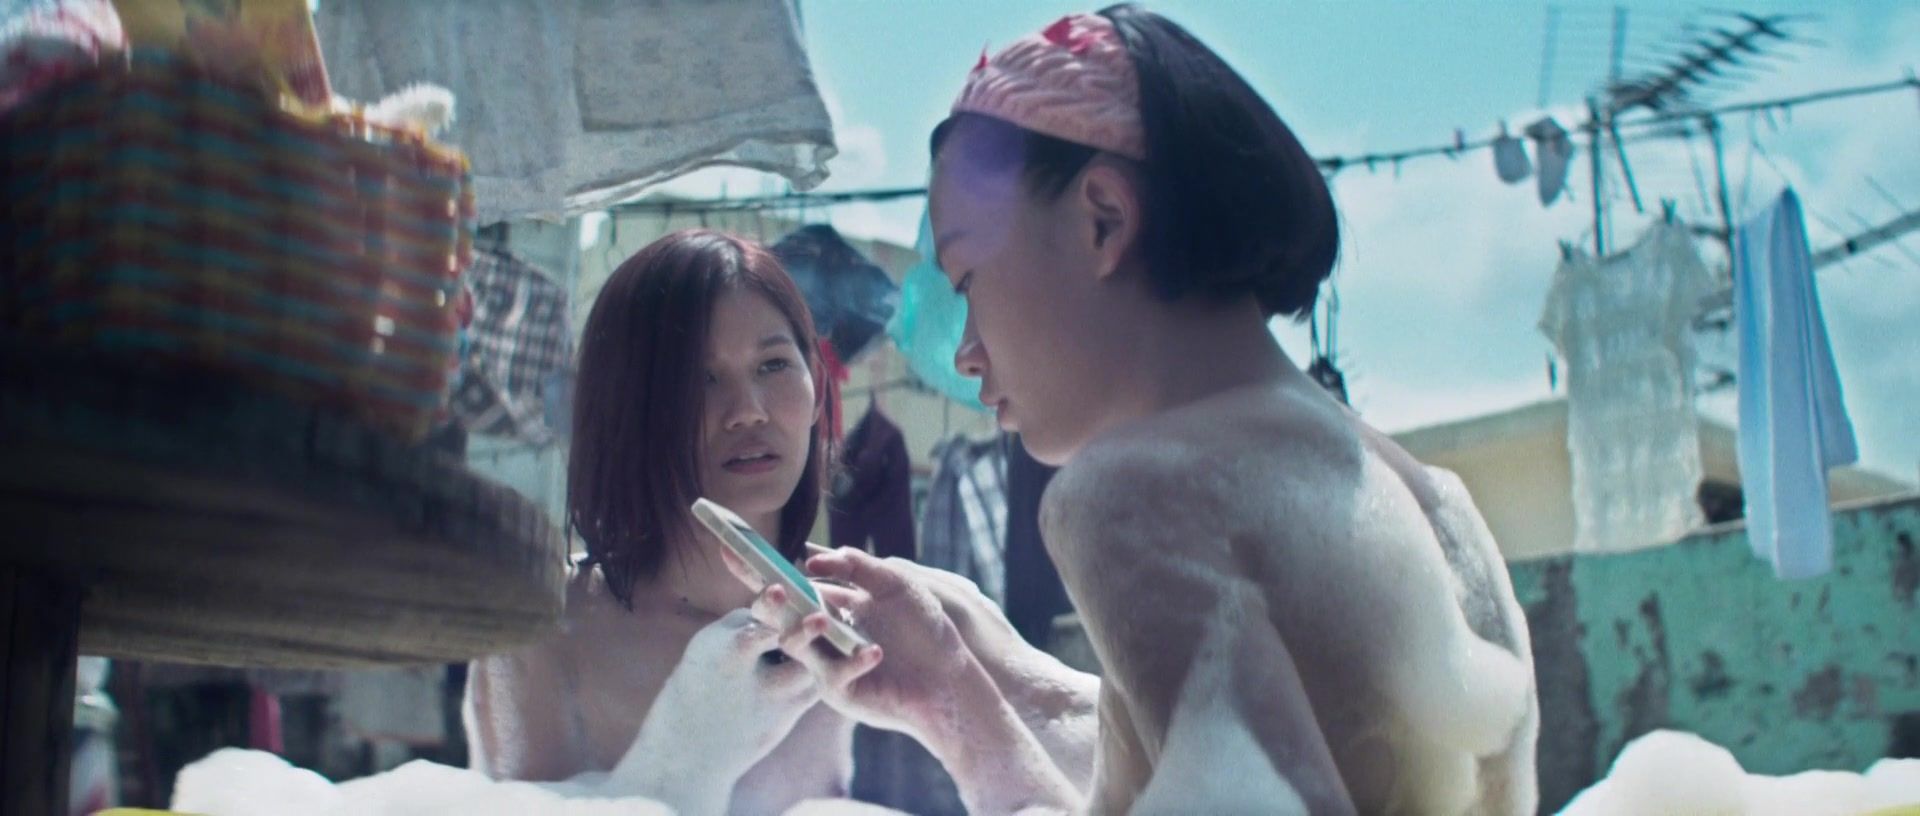 Bang Bros Ashina Kwok, Koyi Mak, Fish Liew nude - Tung baan tung hok (2015) Milf Porn